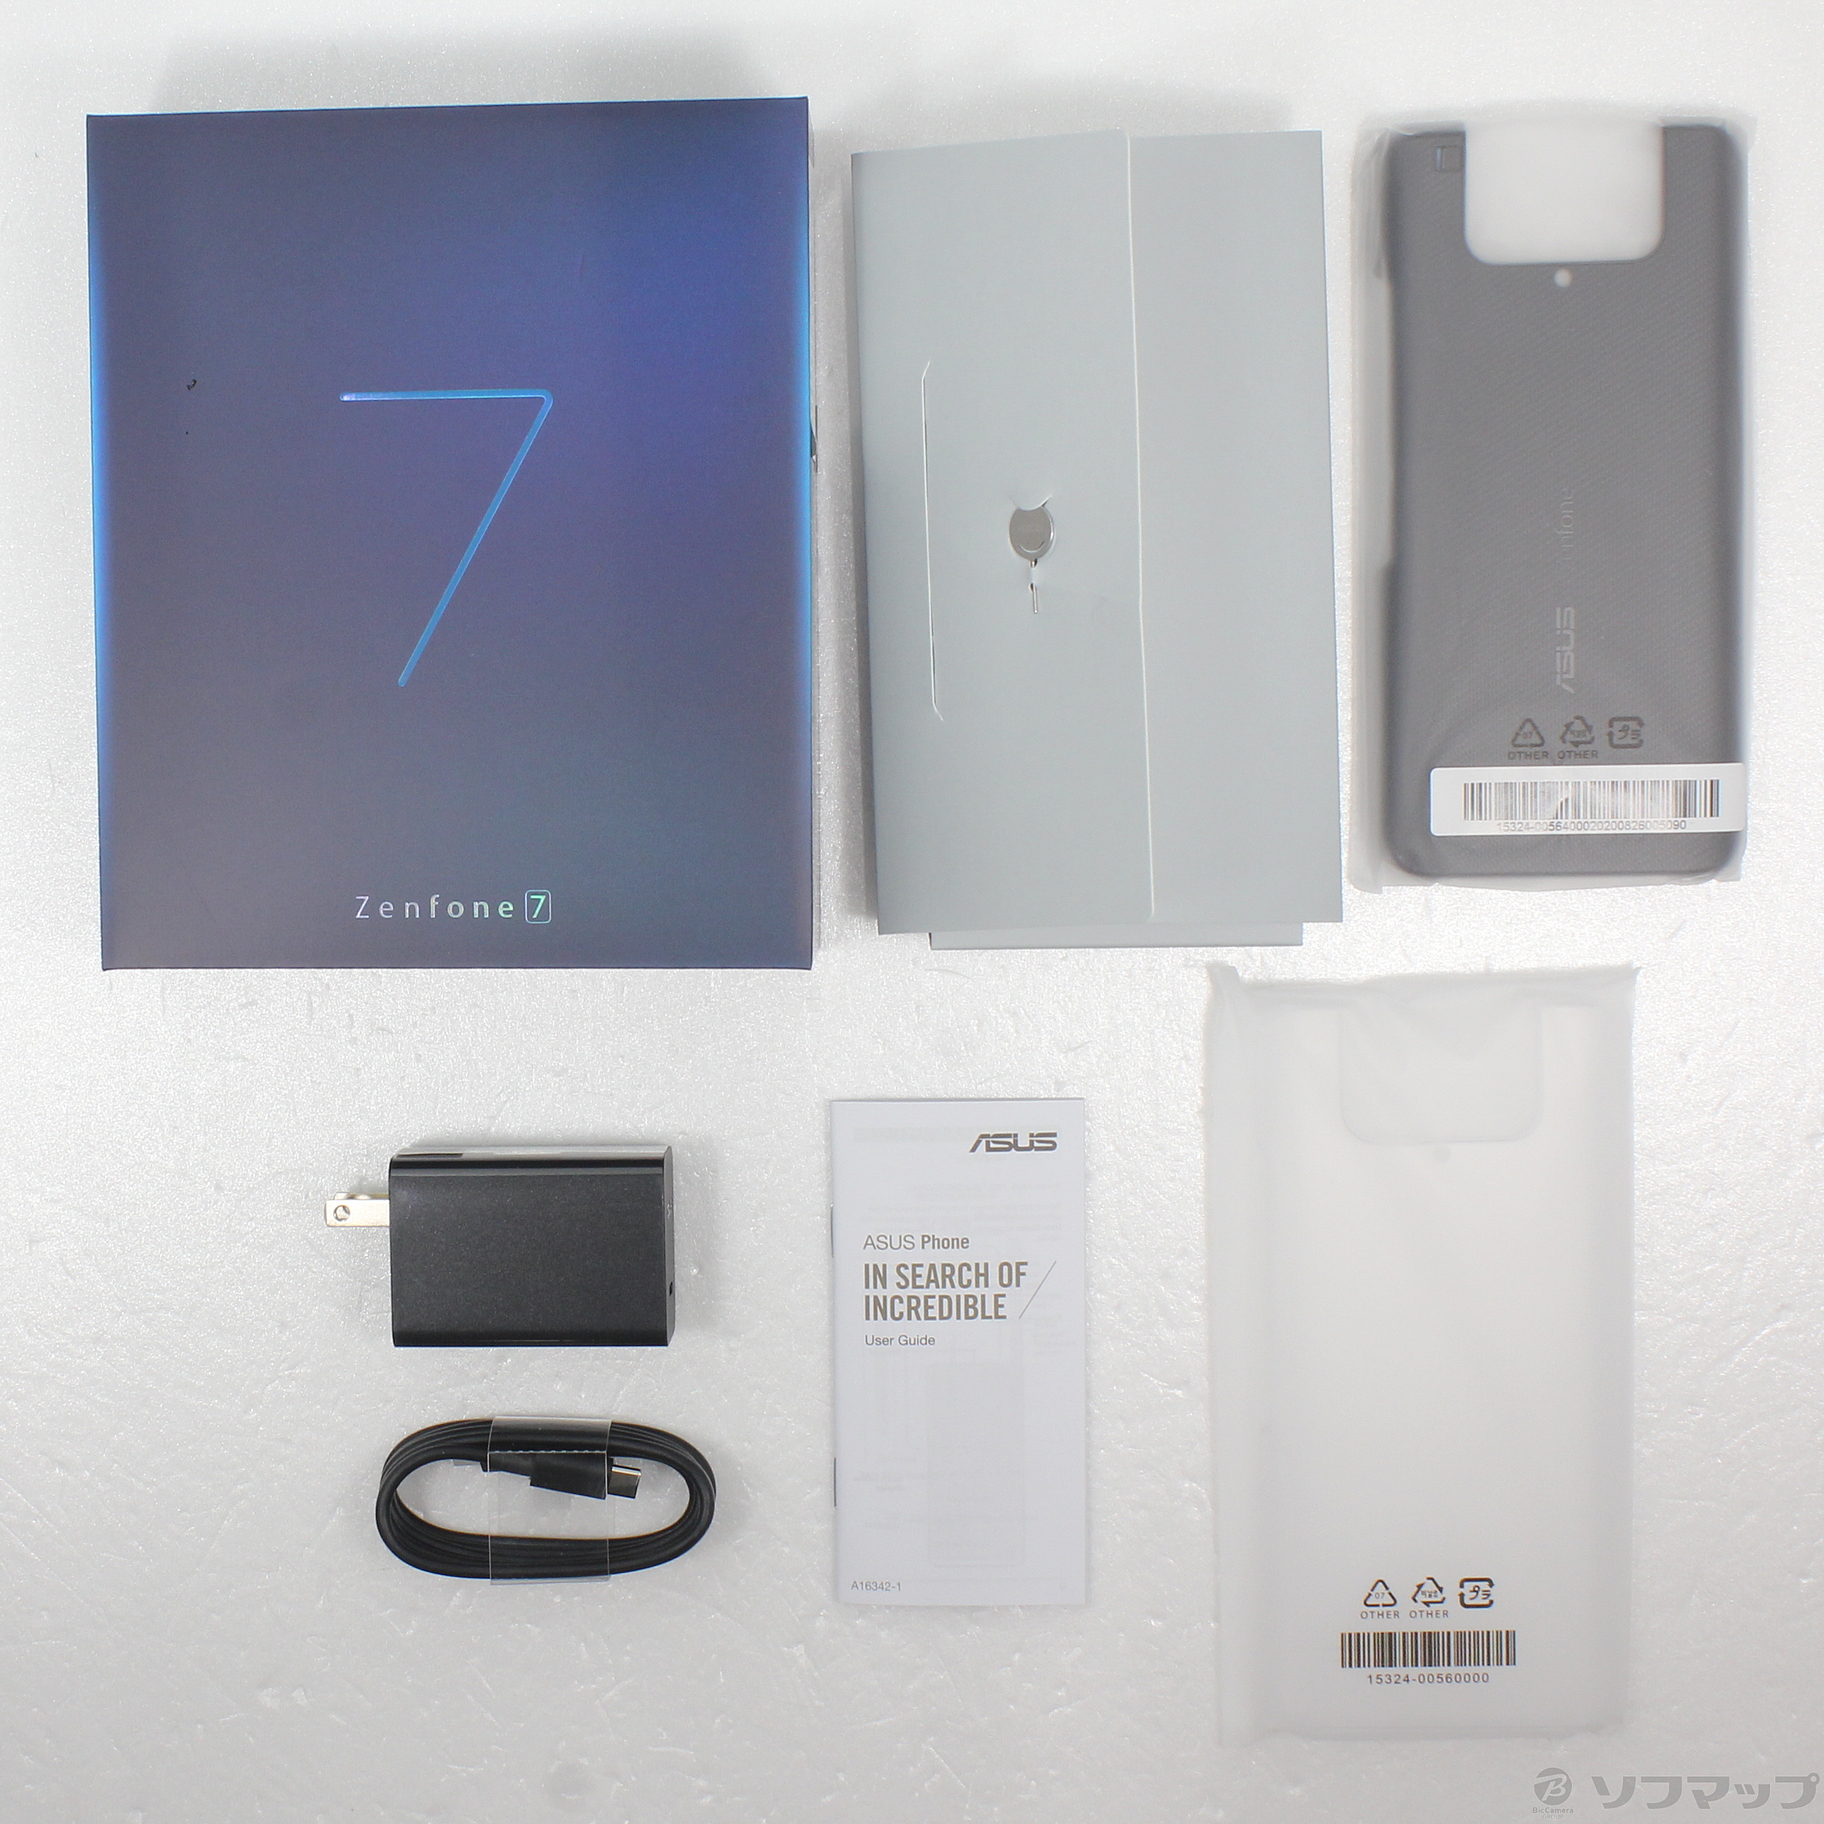 【新品未開封品】ZenFone7 オーロラブラック パステルホワイト 2個セット